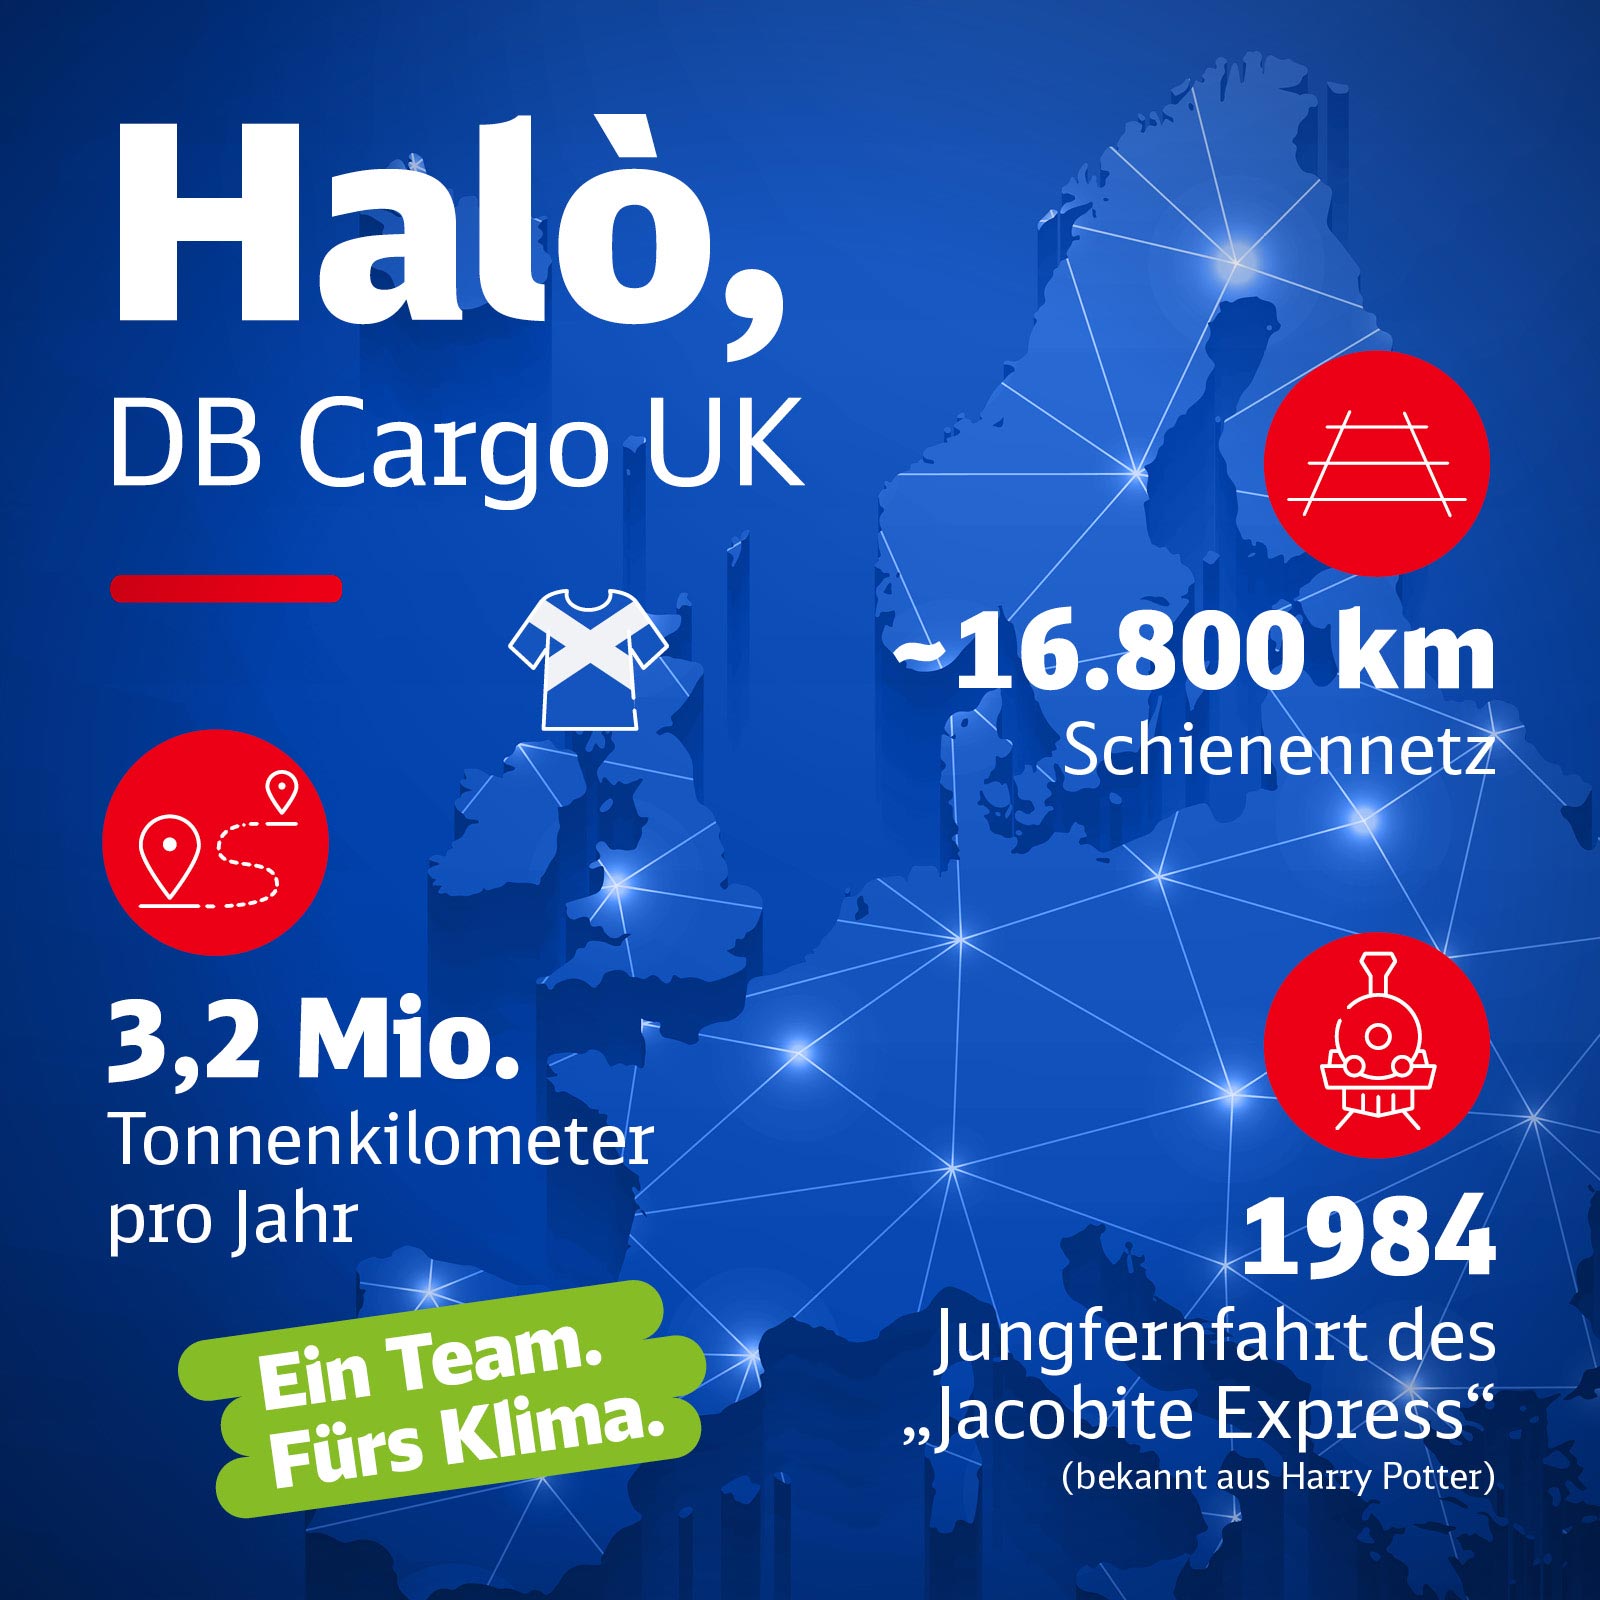 Eine Europakarte mit Infos zu DB Cargo UK.